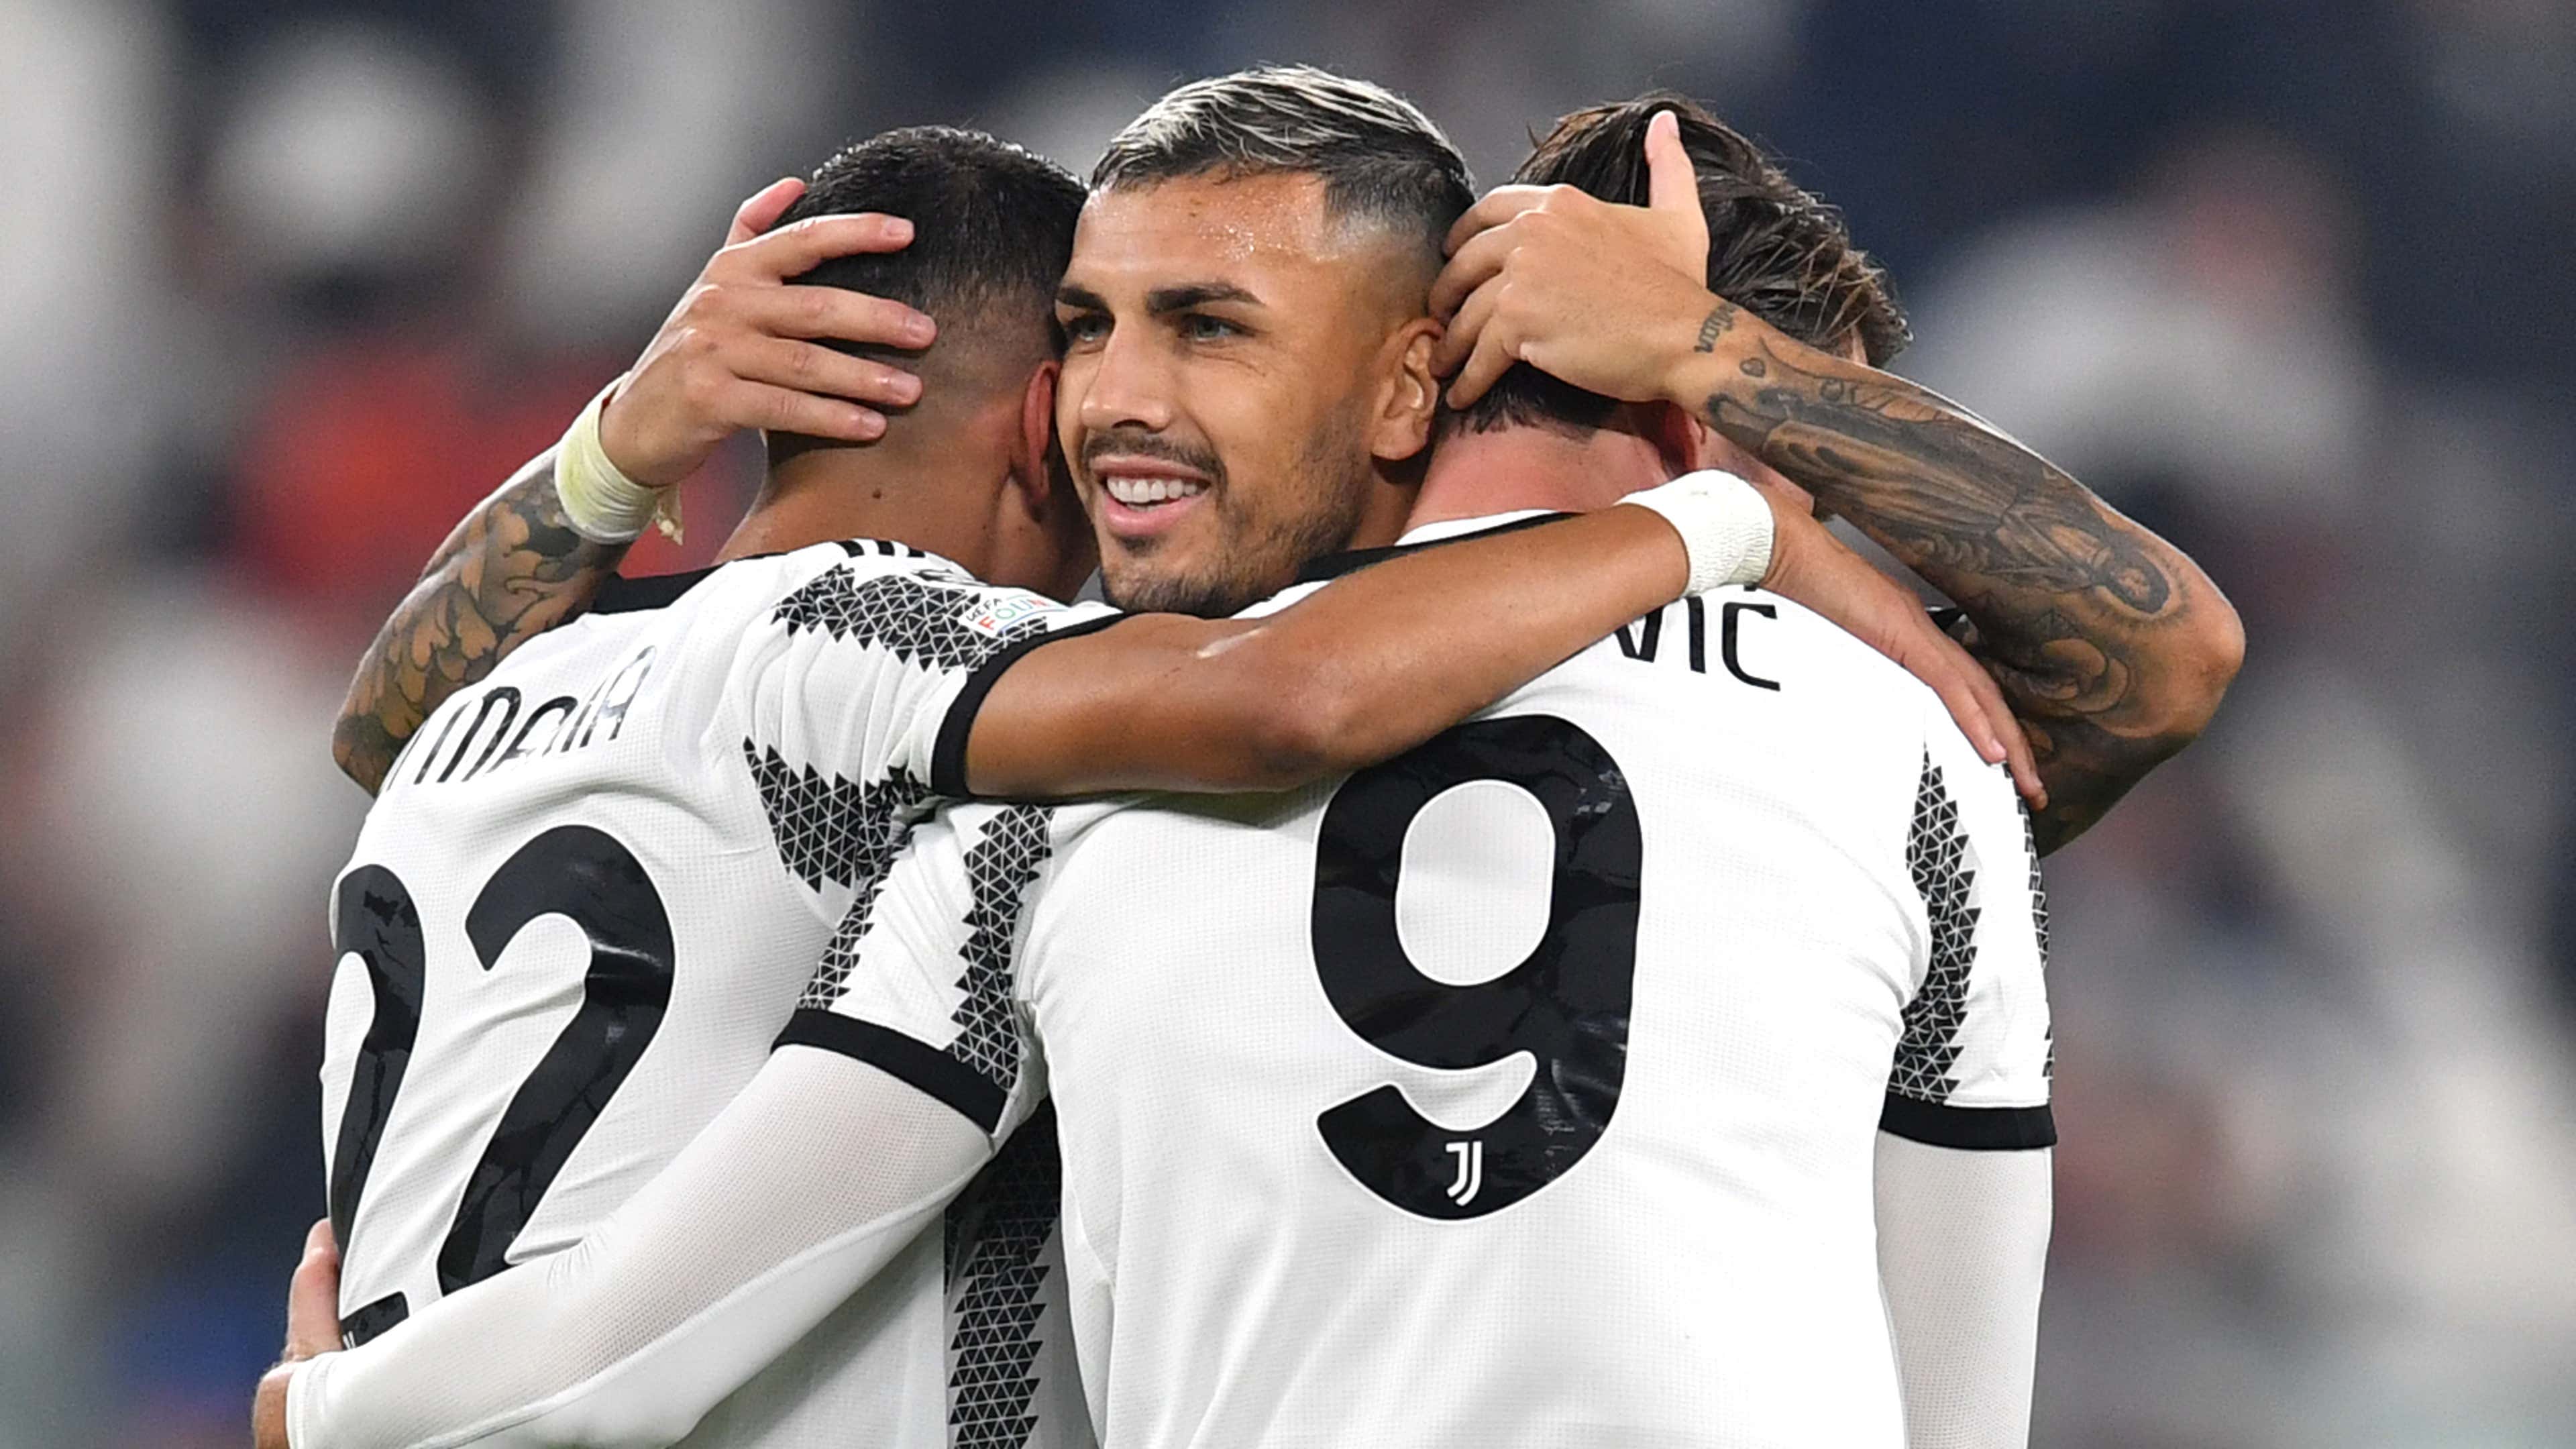 Paredes Juventus celebrating